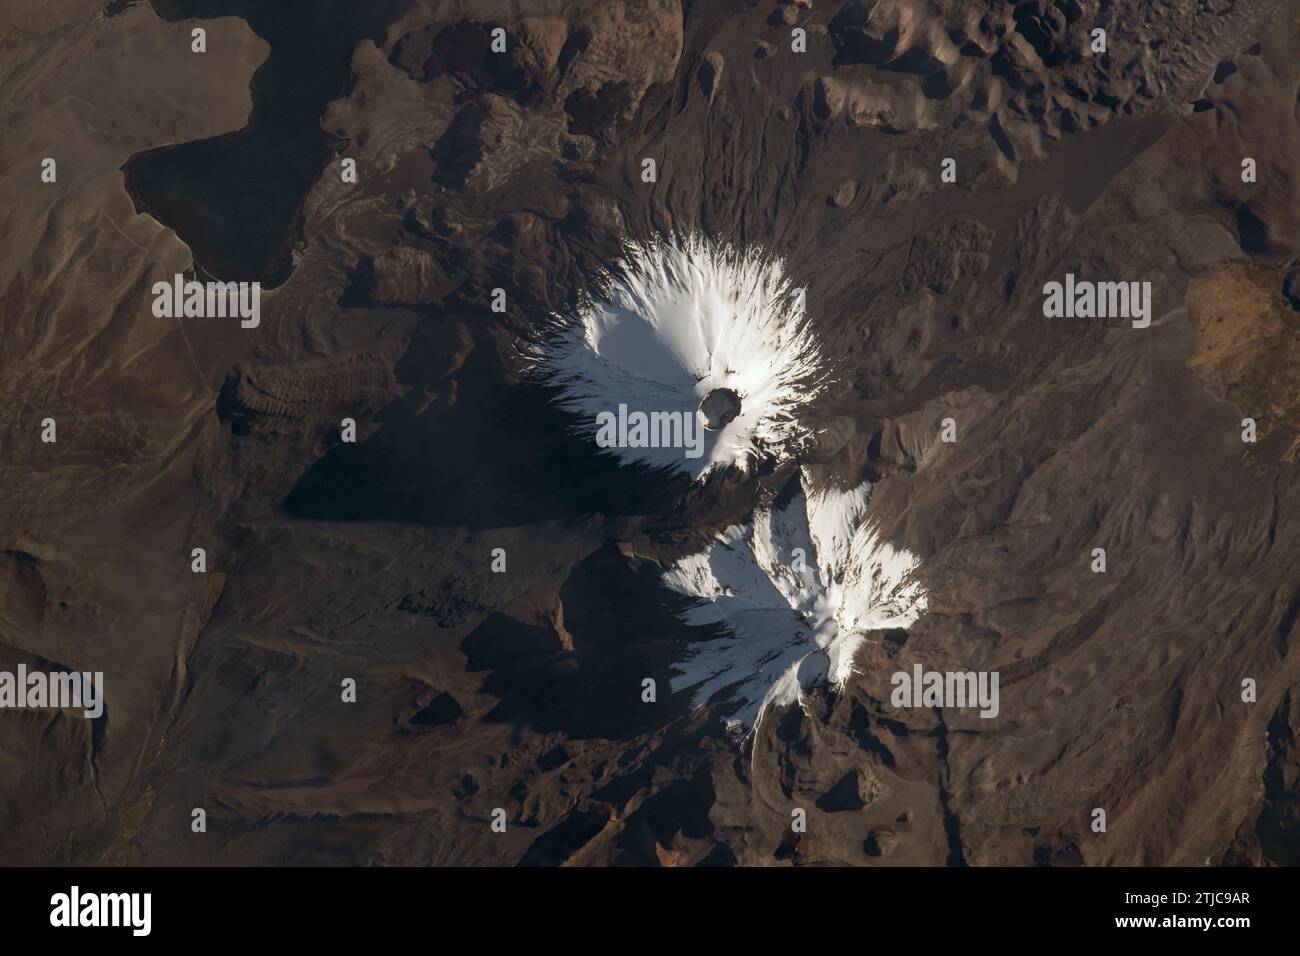 Die Stratovulkane Parinacota und Pomerape (von oben nach unten) von der Internationalen Raumstation aus gesehen, die 263 Meilen über Chile in Südamerika umkreiste. Der Parinacota ist ein ruhender Vulkan an der Grenze zwischen Chile und Bolivien, dessen Gipfel etwa 20.800 Meter beträgt. Pomerape, zuletzt vor mehr als 100.000 Jahren aktiv, befindet sich ebenfalls an der Grenze zwischen Chile und Bolivien mit einer Höhe von etwa 20.600 Metern. Links oben befindet sich der Chungar-‡-See im Norden Chiles, der etwa 14.800 Meter über dem Meeresspiegel liegt. Bildnachweis: NASA Stockfoto